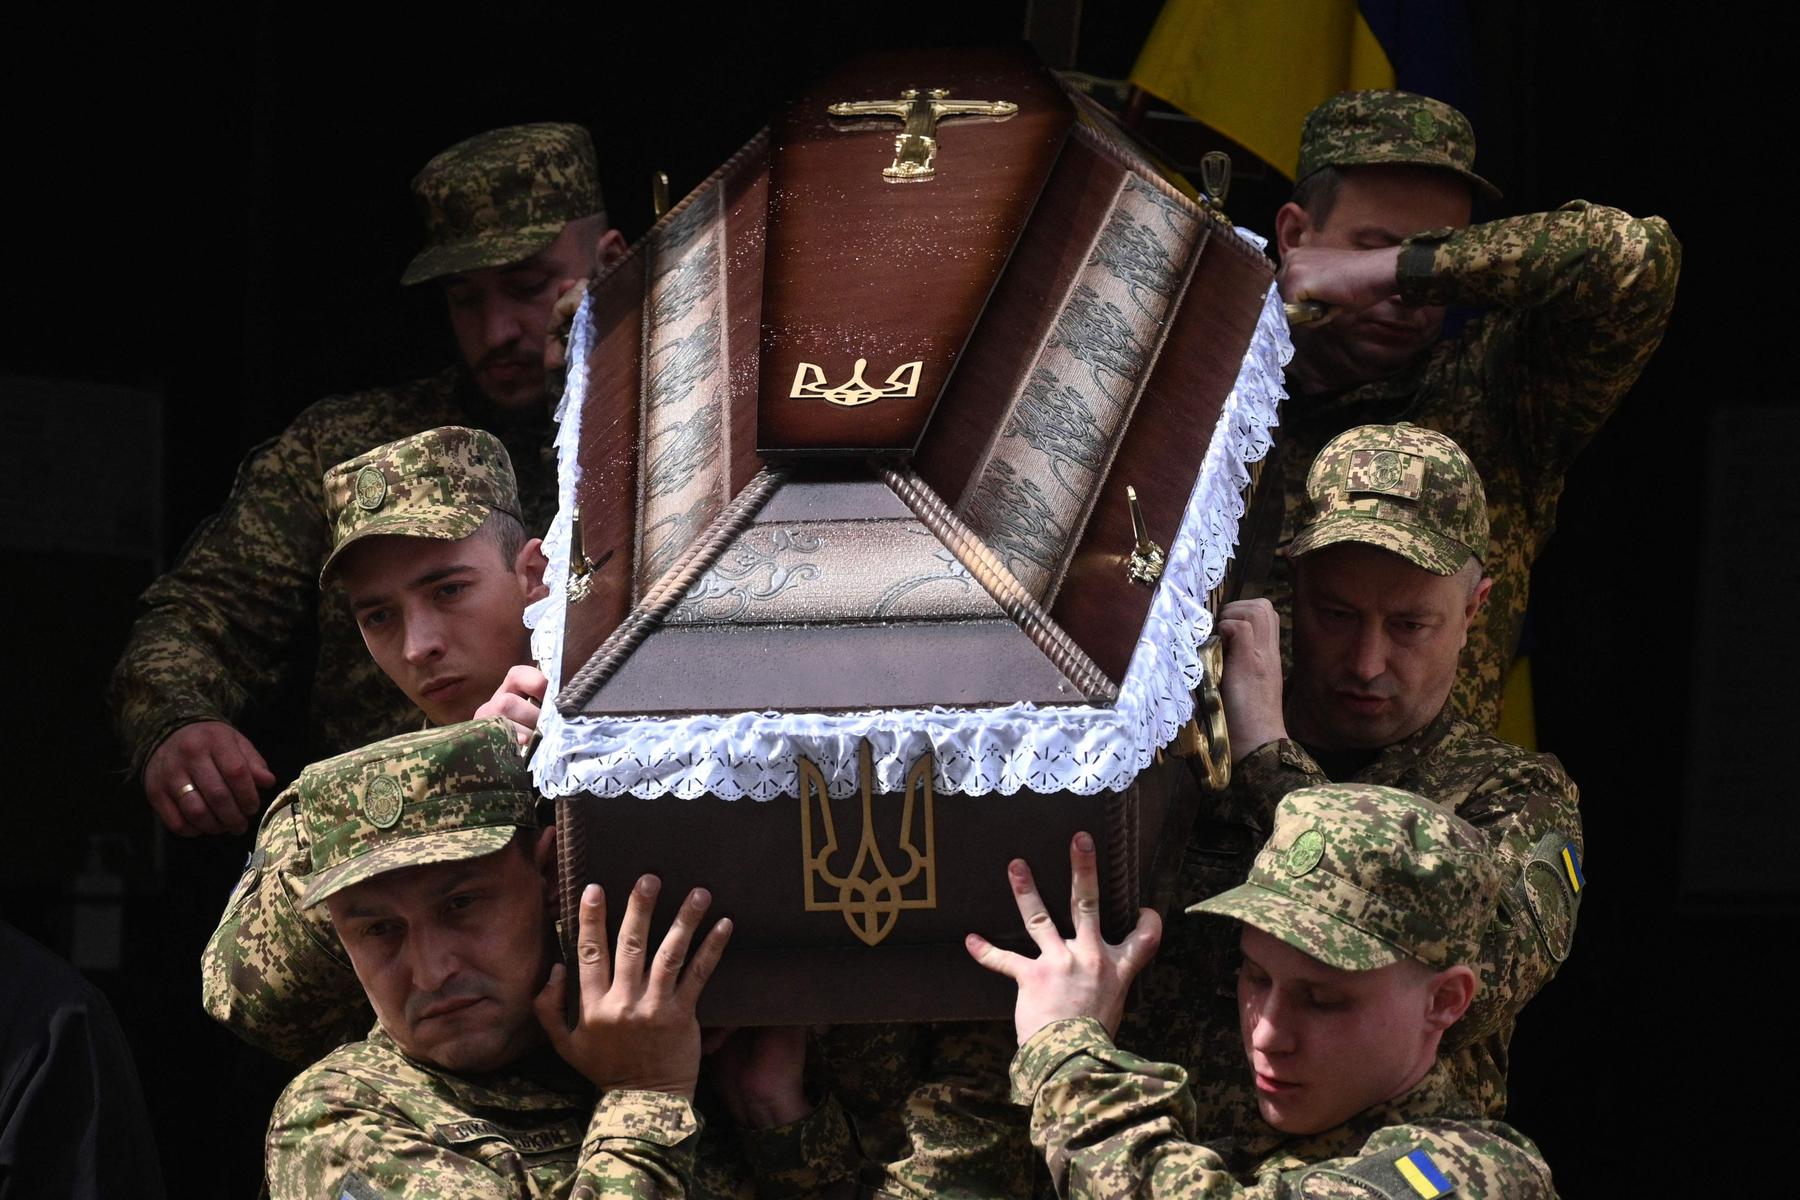 ukrainischer militärvertreter: ukraine-krieg kann nur durch vertrag beendet werden